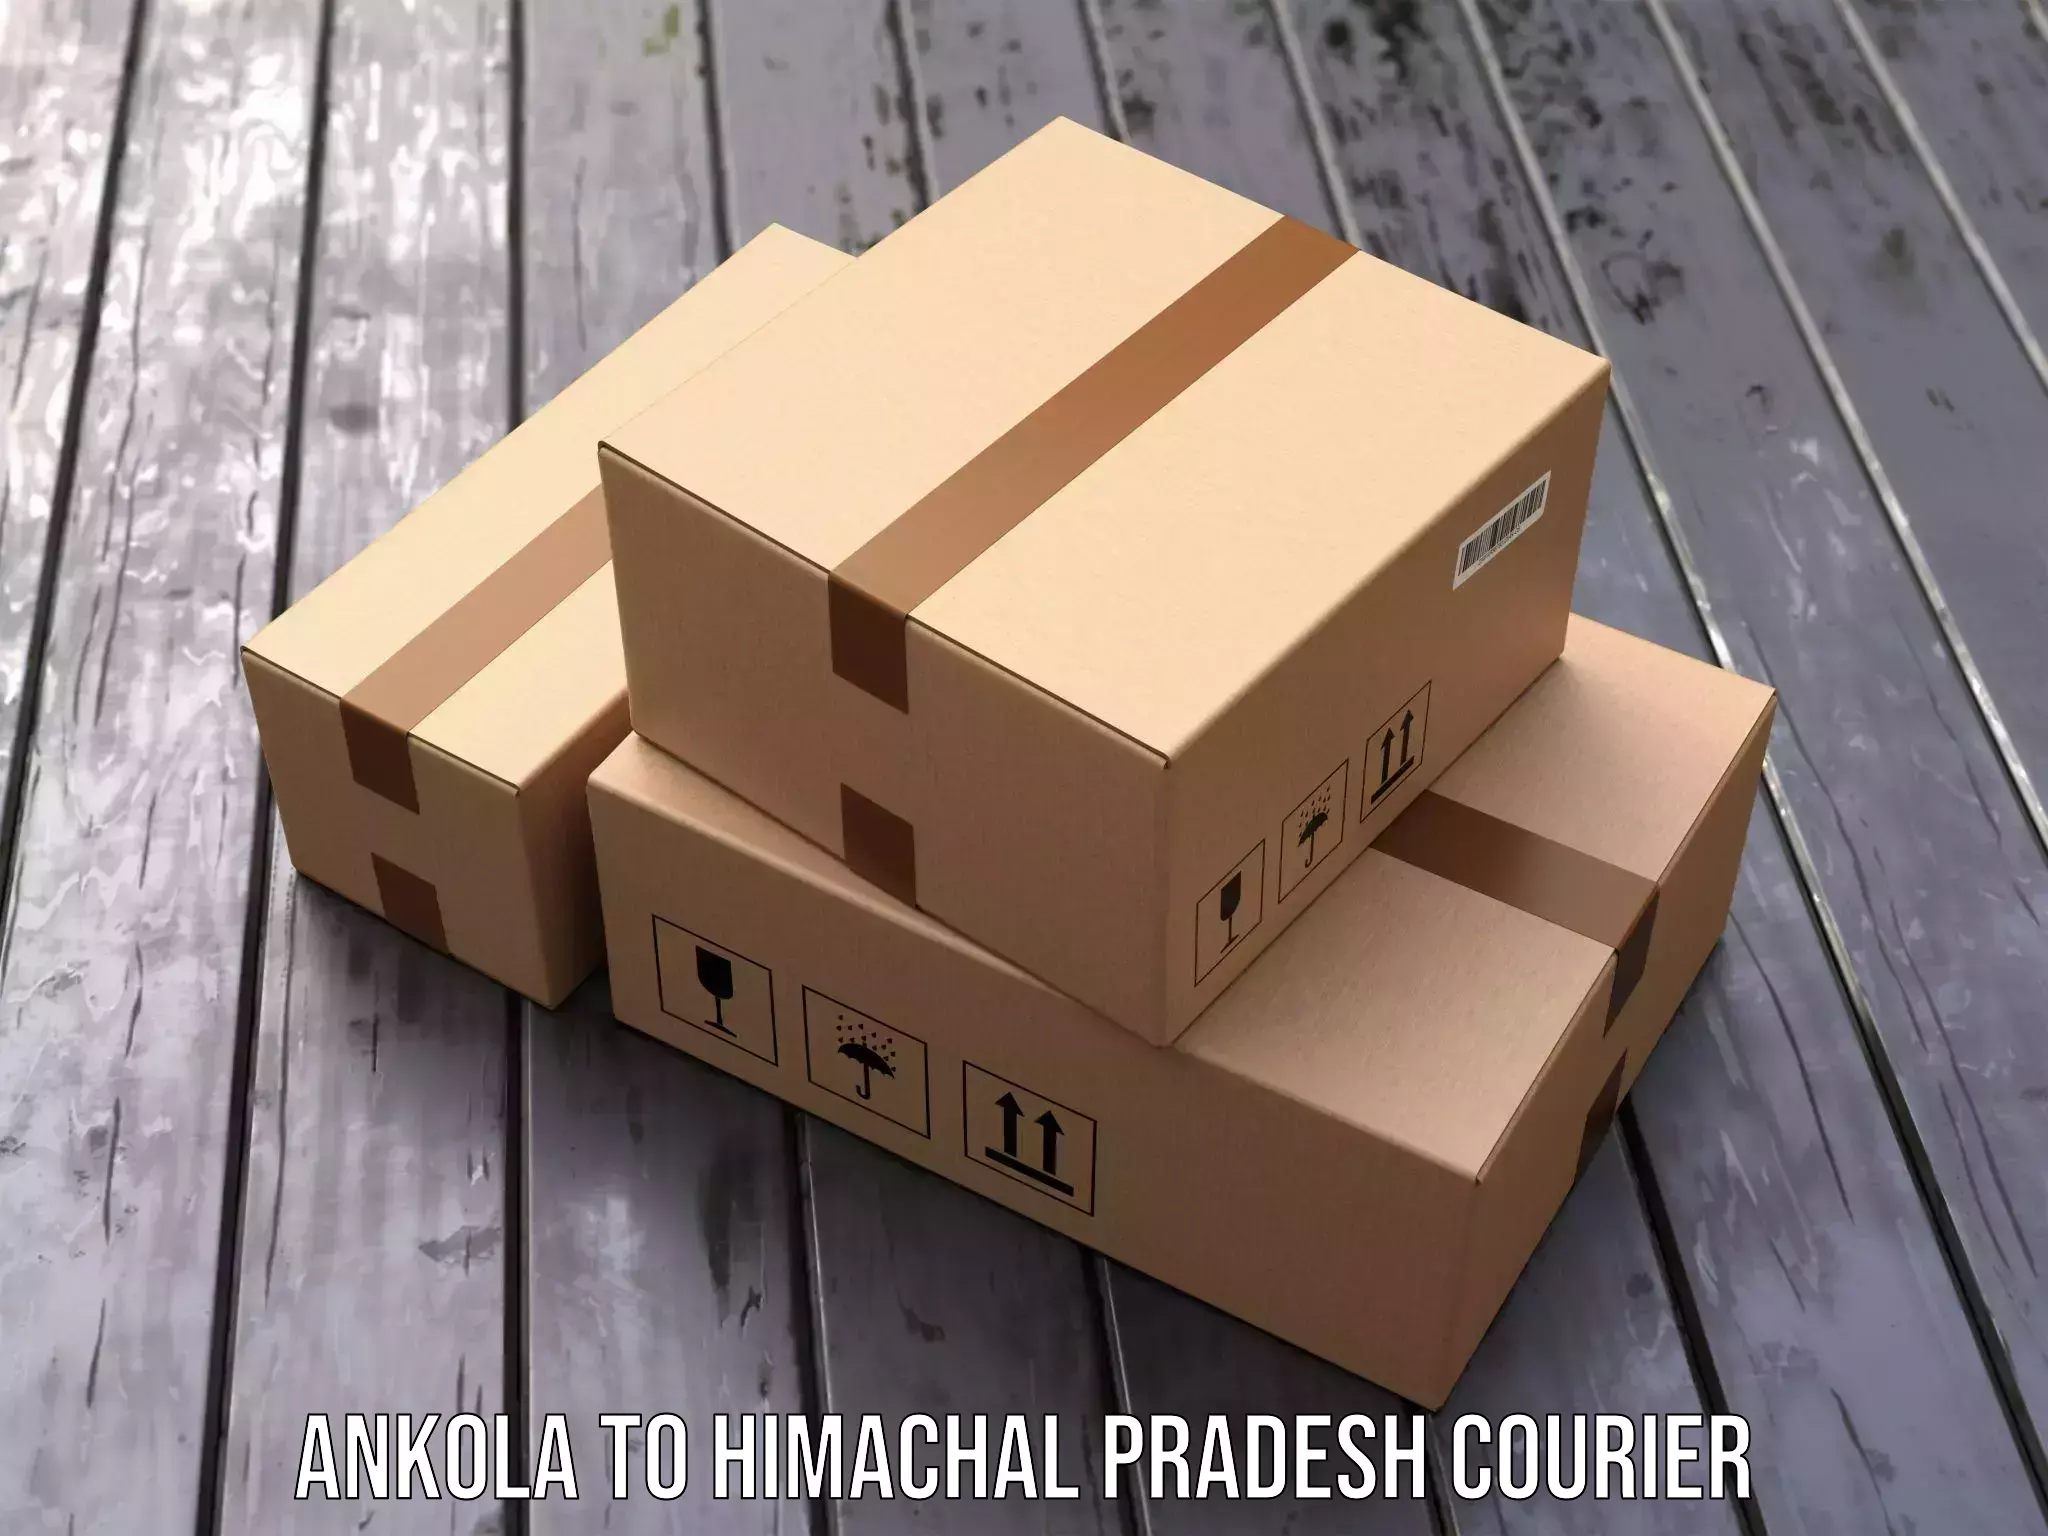 24/7 courier service Ankola to Una Himachal Pradesh